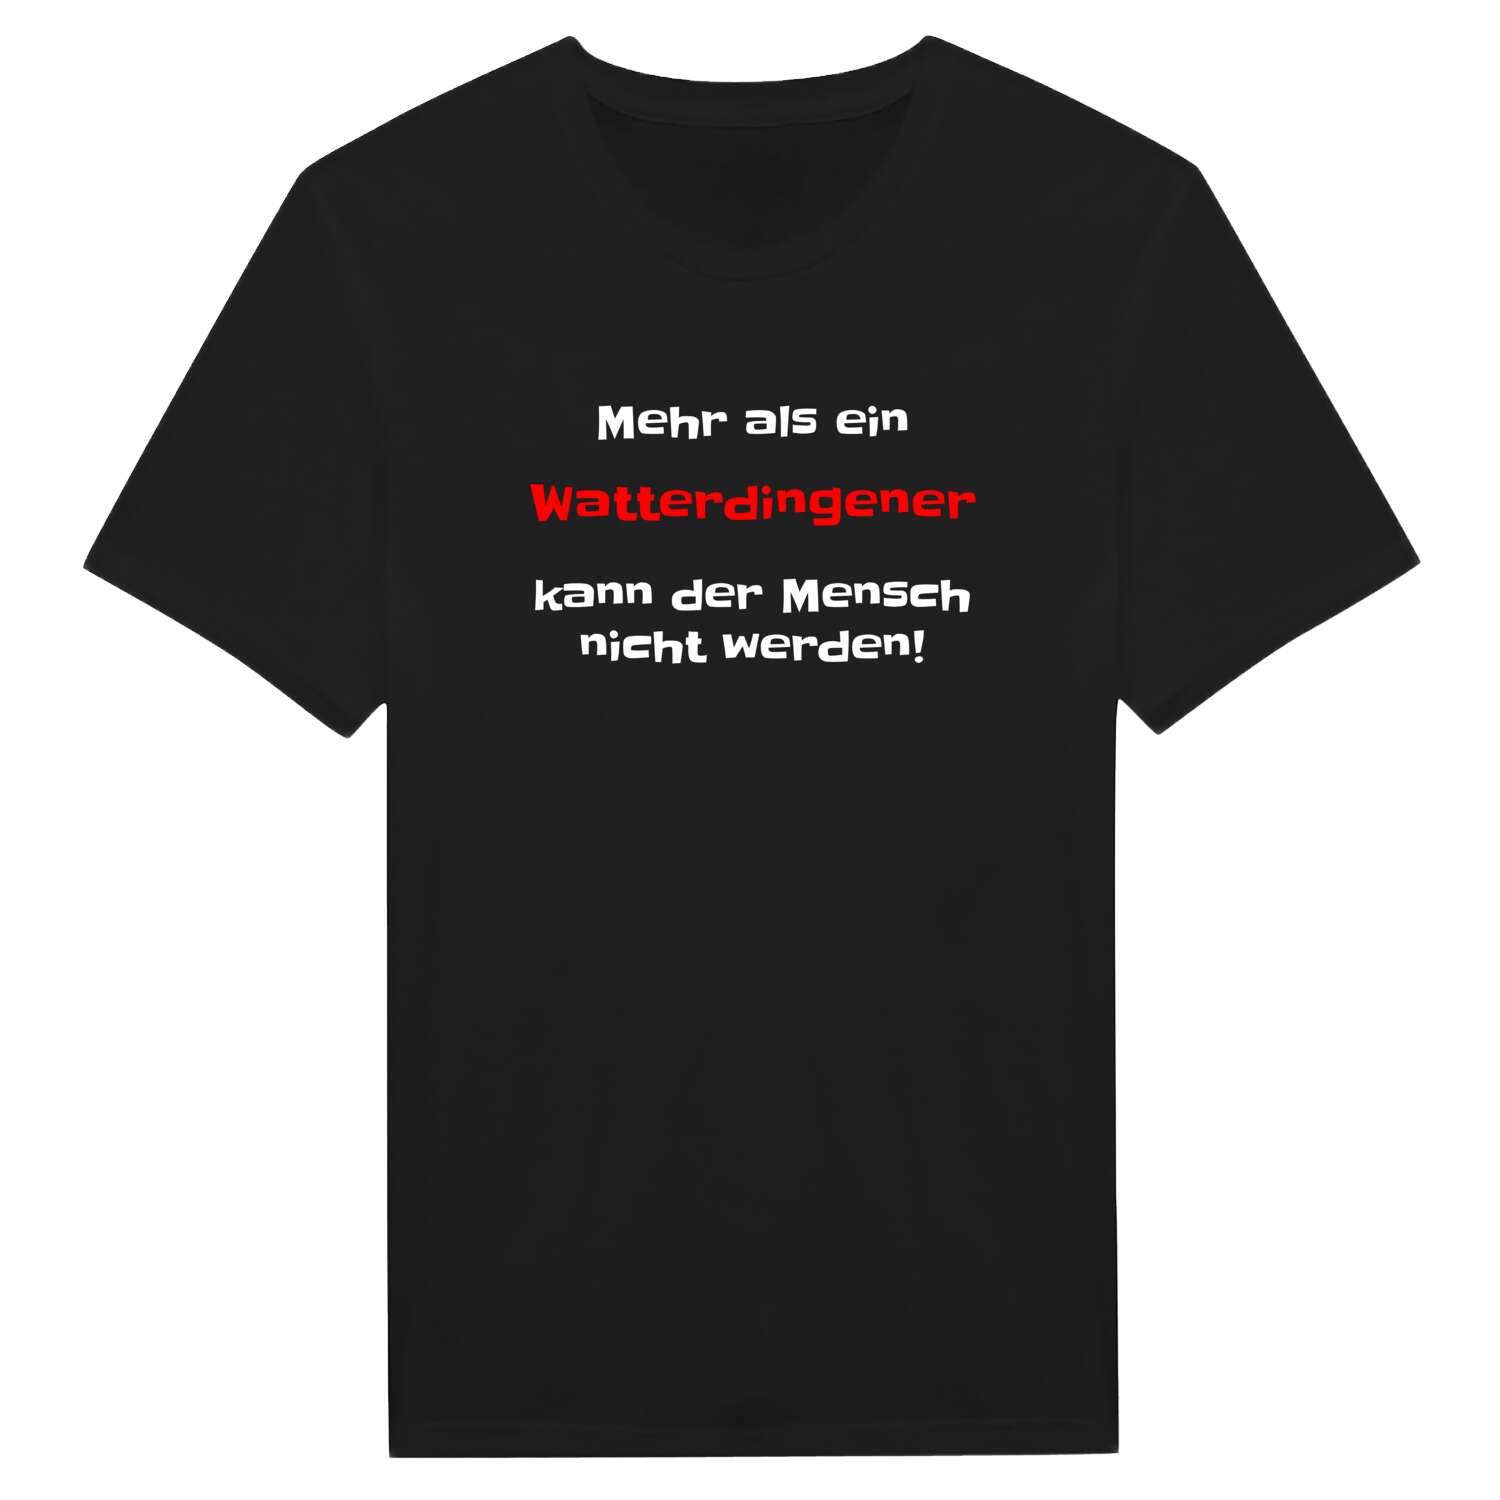 Watterdingen T-Shirt »Mehr als ein«